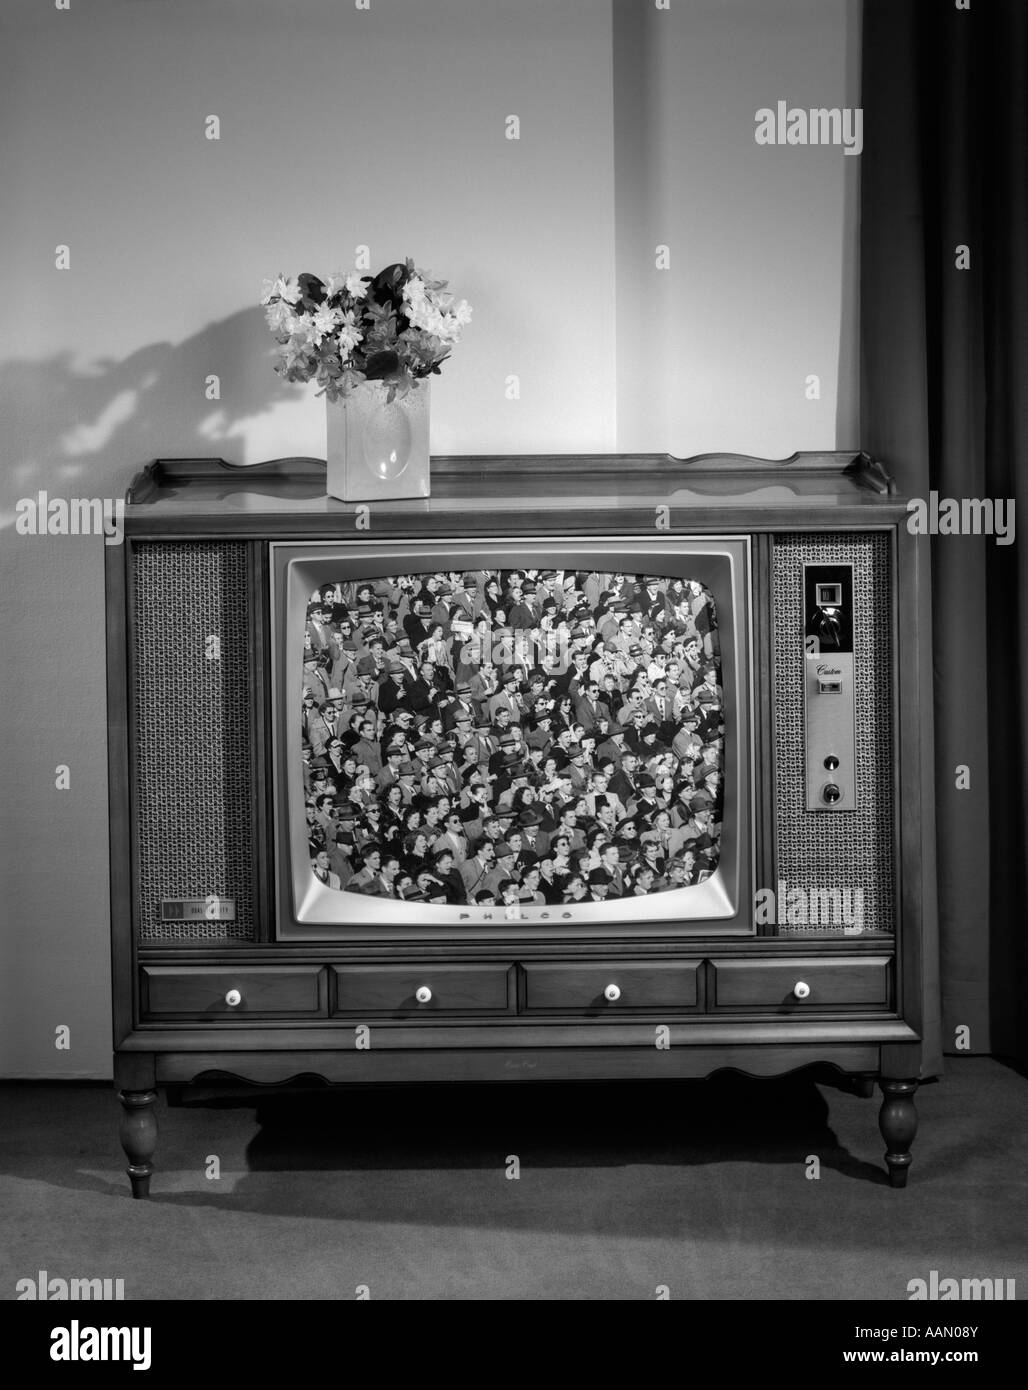 1960 HEAD-ON VOIR DE TV avec des foules dans les gradins à l'écran Banque D'Images